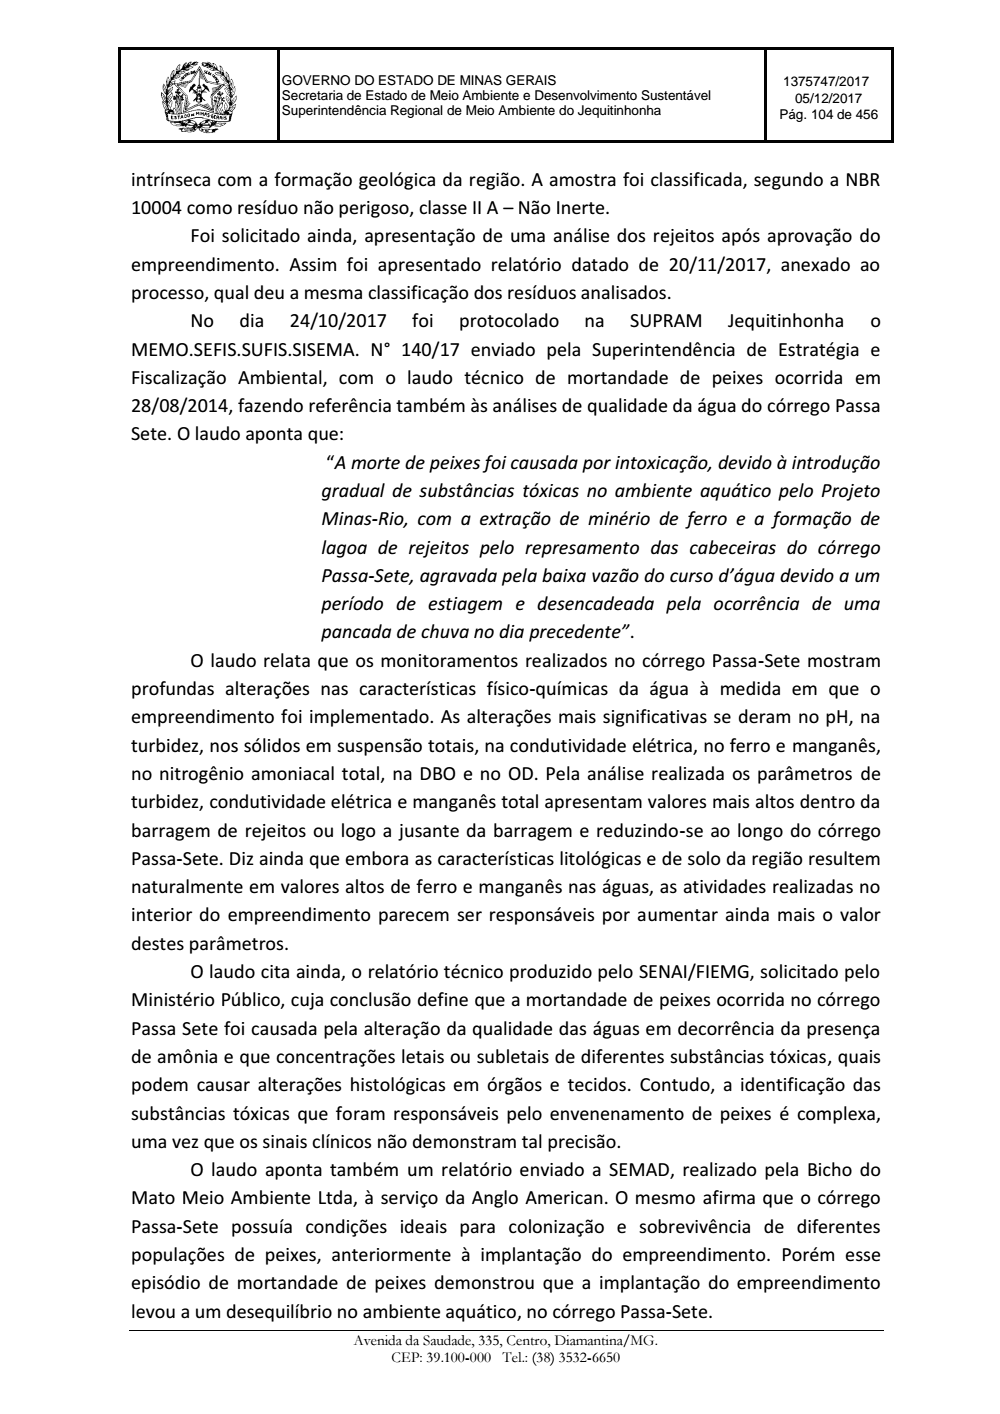 Page 104 from Parecer único da Secretaria de estado de Meio Ambiente e Desenvolvimento Sustentável (SEMAD)